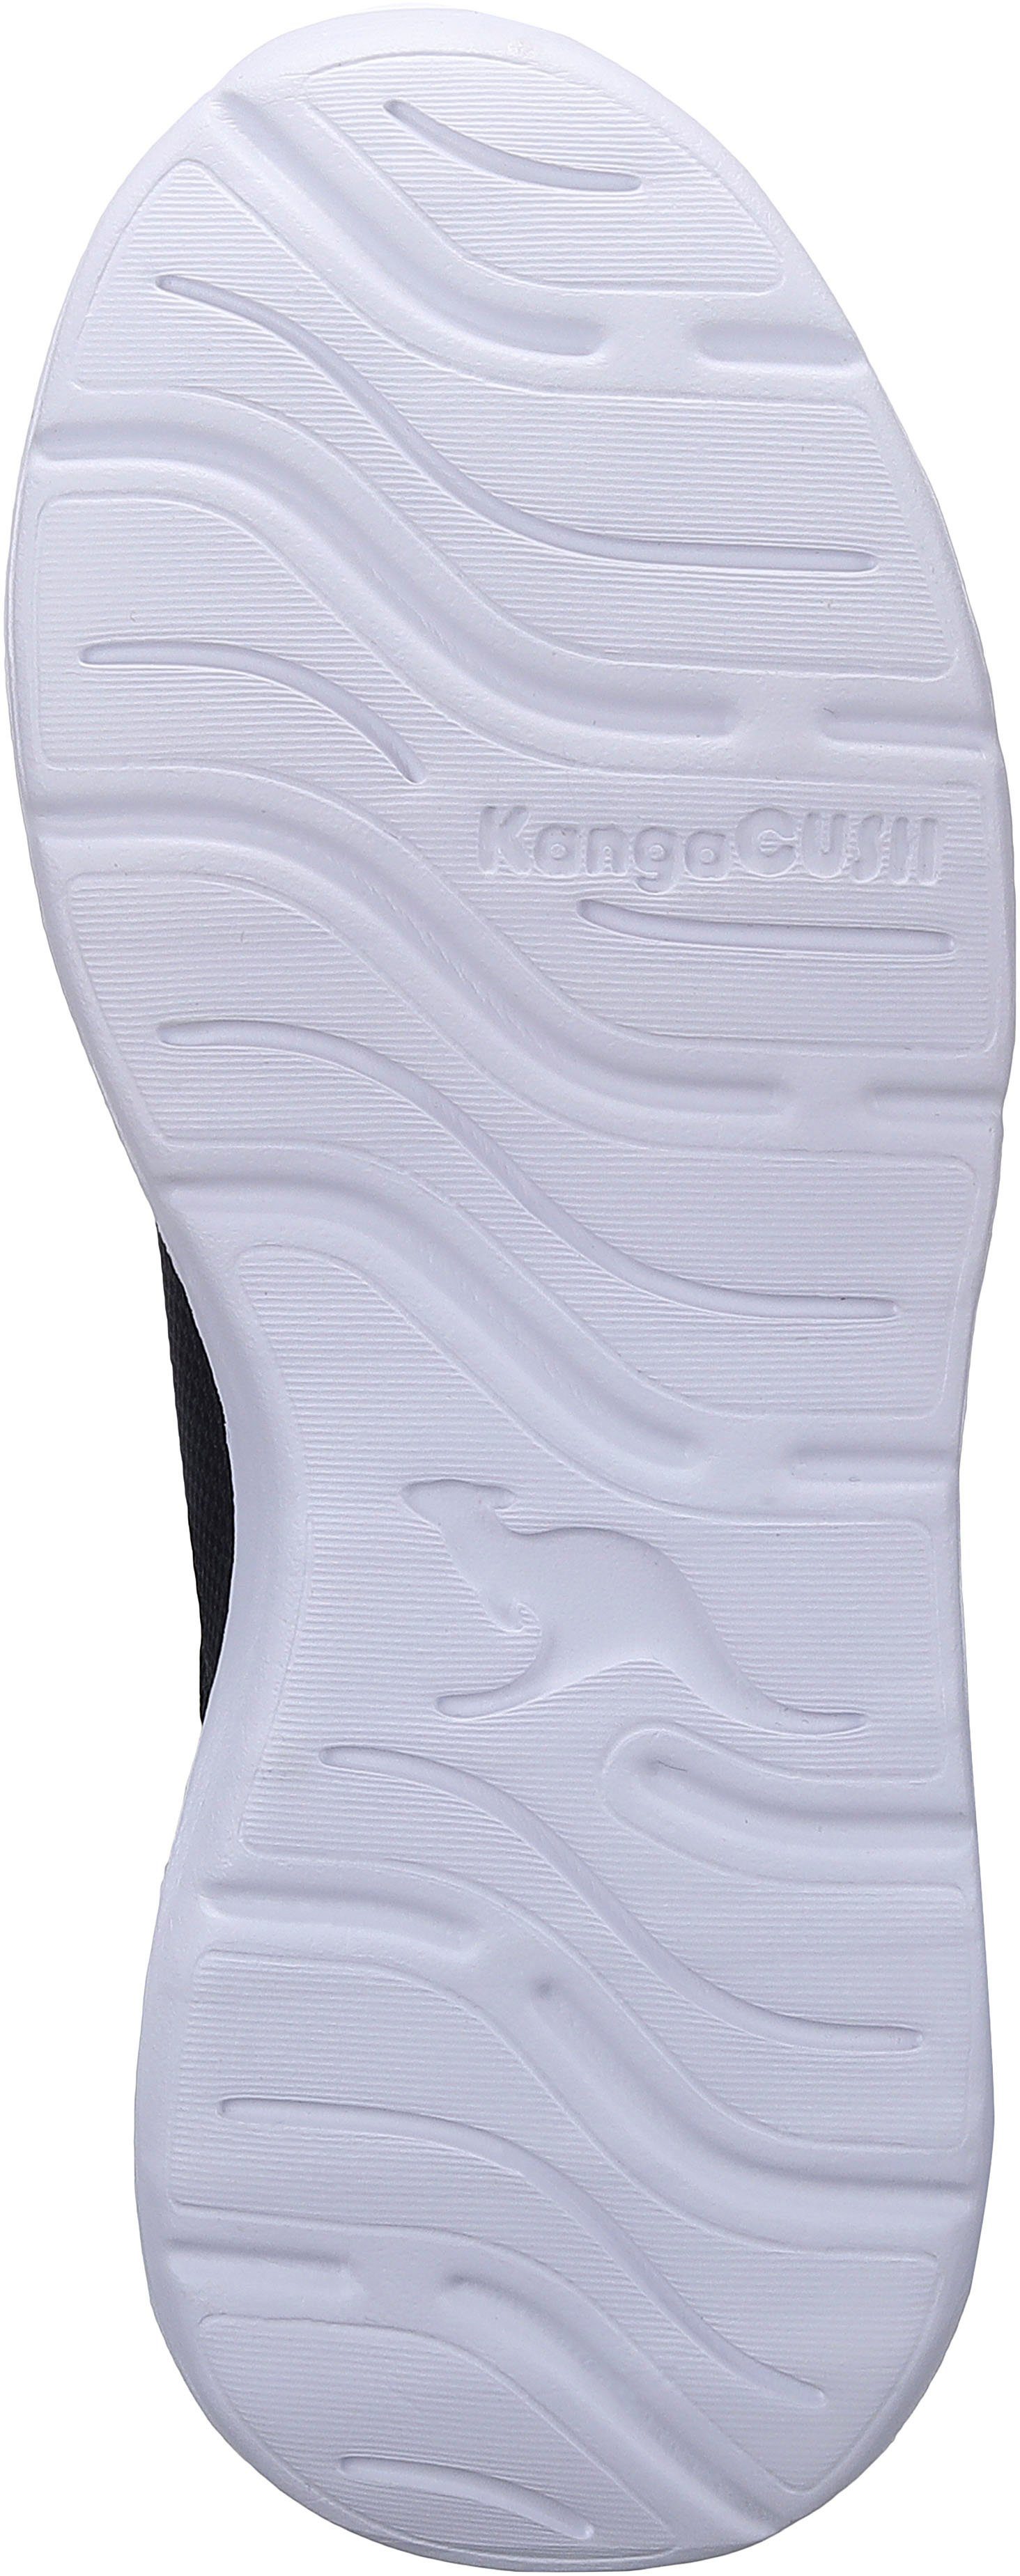 Klettverschluss mit EV elastischen Sneaker und KangaROOS schwarz-grau Schnürsenkeln KL-Rise